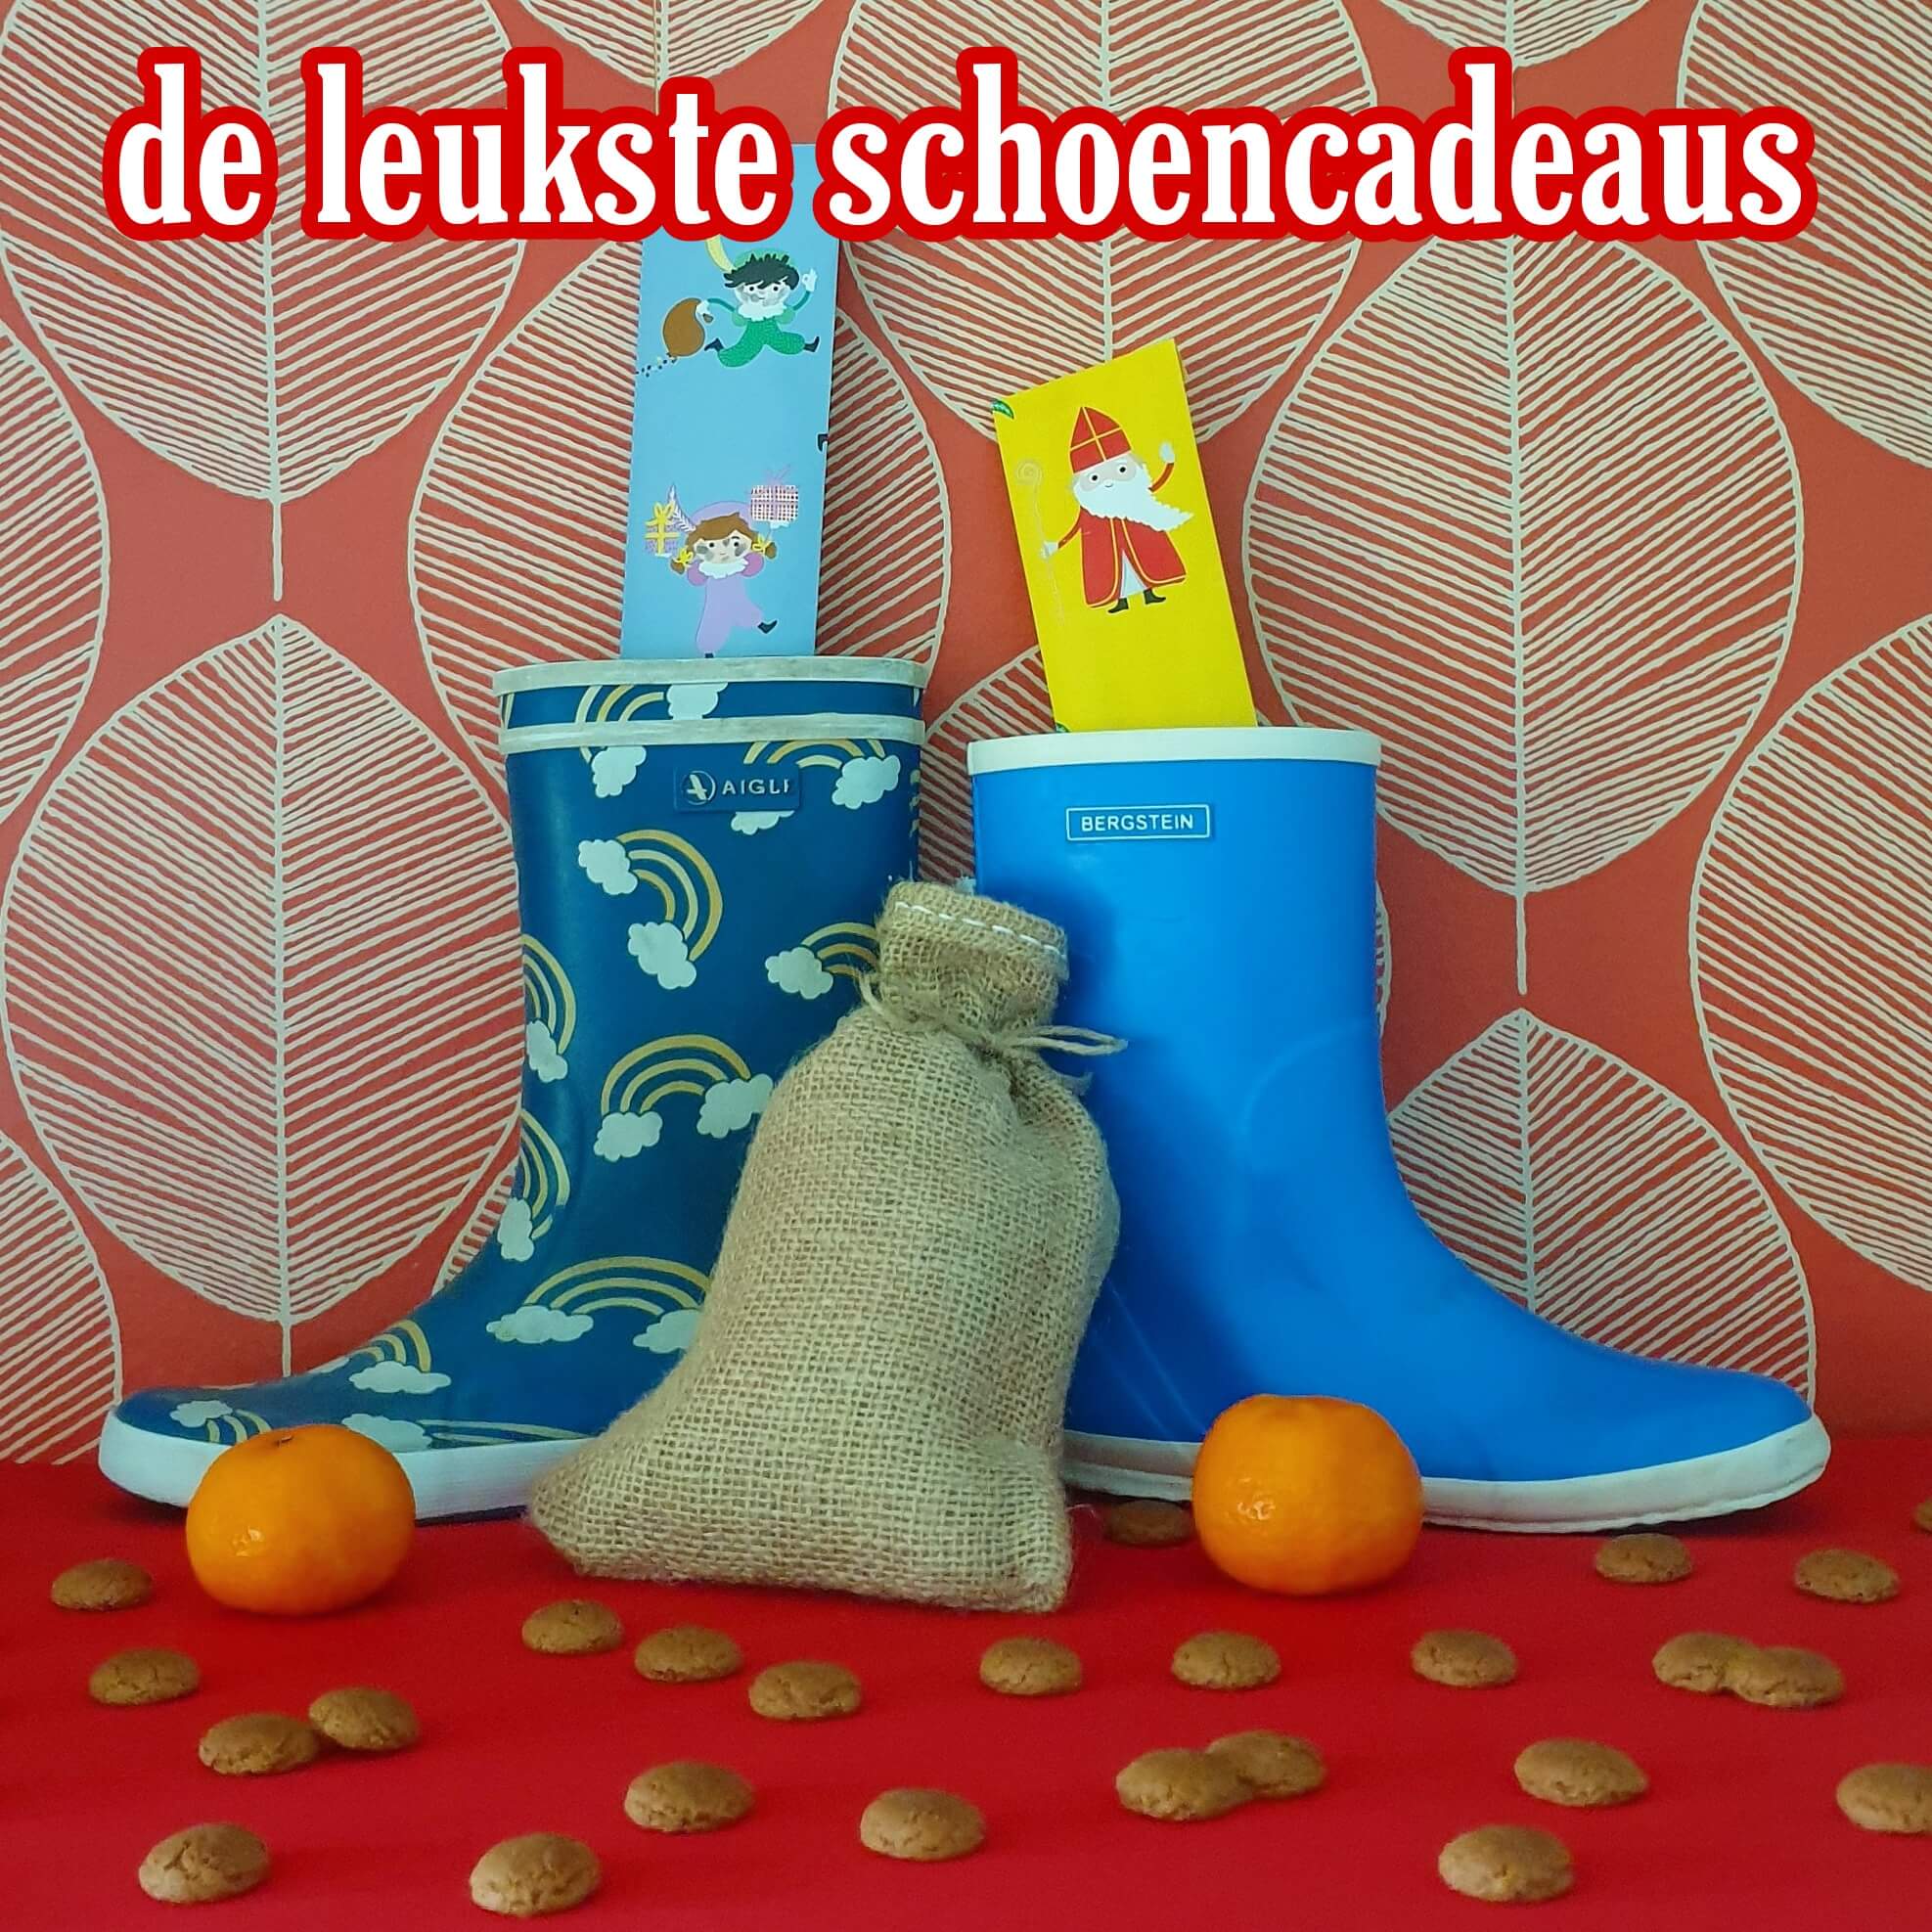 Supermarkt ik ben trots Volgen De favoriete schoencadeaus van Sinterklaas - Leuk met kids Leuk met kids